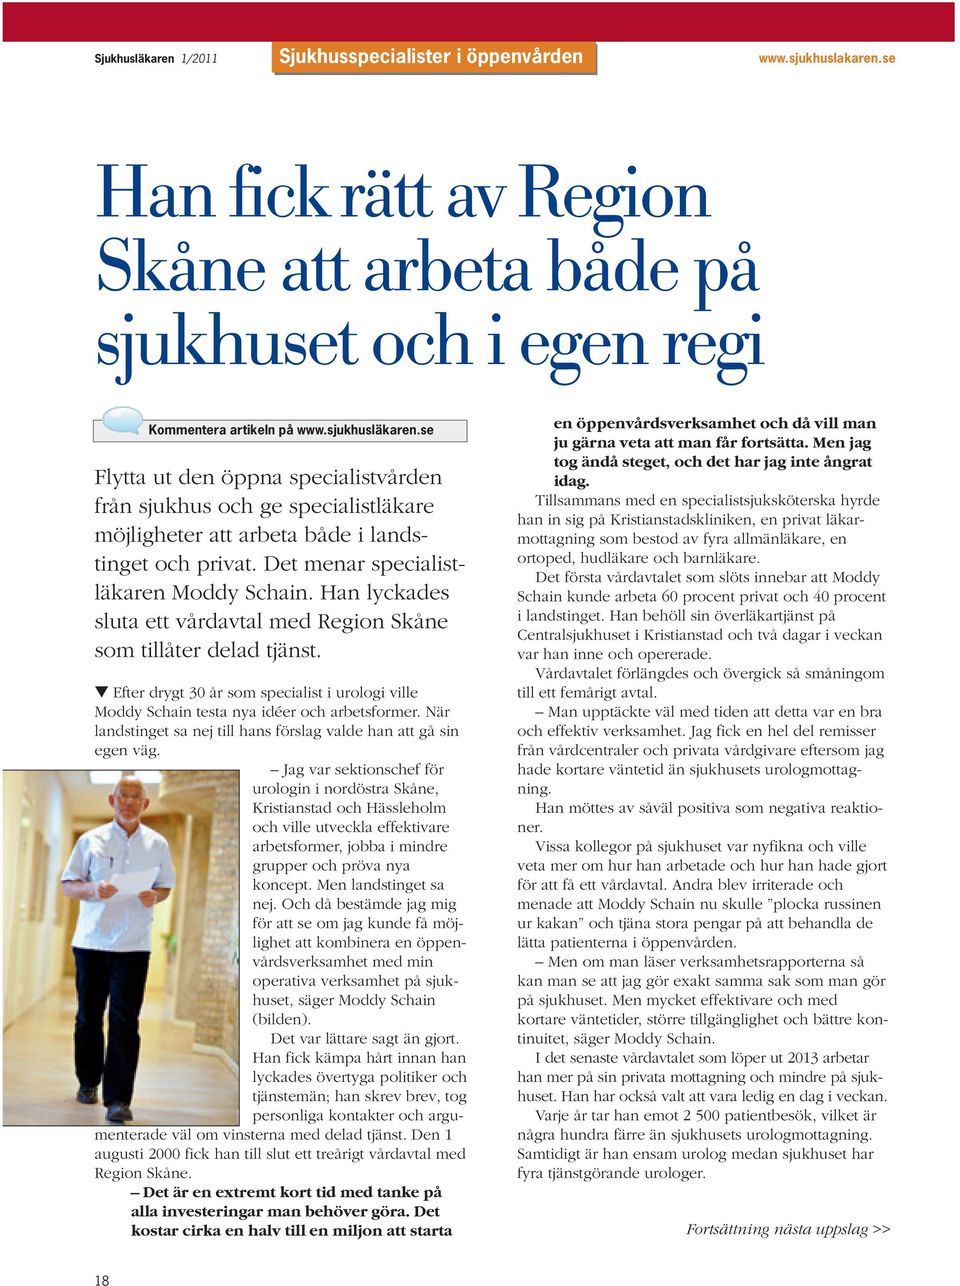 Han lyckades sluta ett vårdavtal med Region Skåne som tillåter delad tjänst. Efter drygt 30 år som specialist i urologi ville Moddy Schain testa nya idéer och arbetsformer.